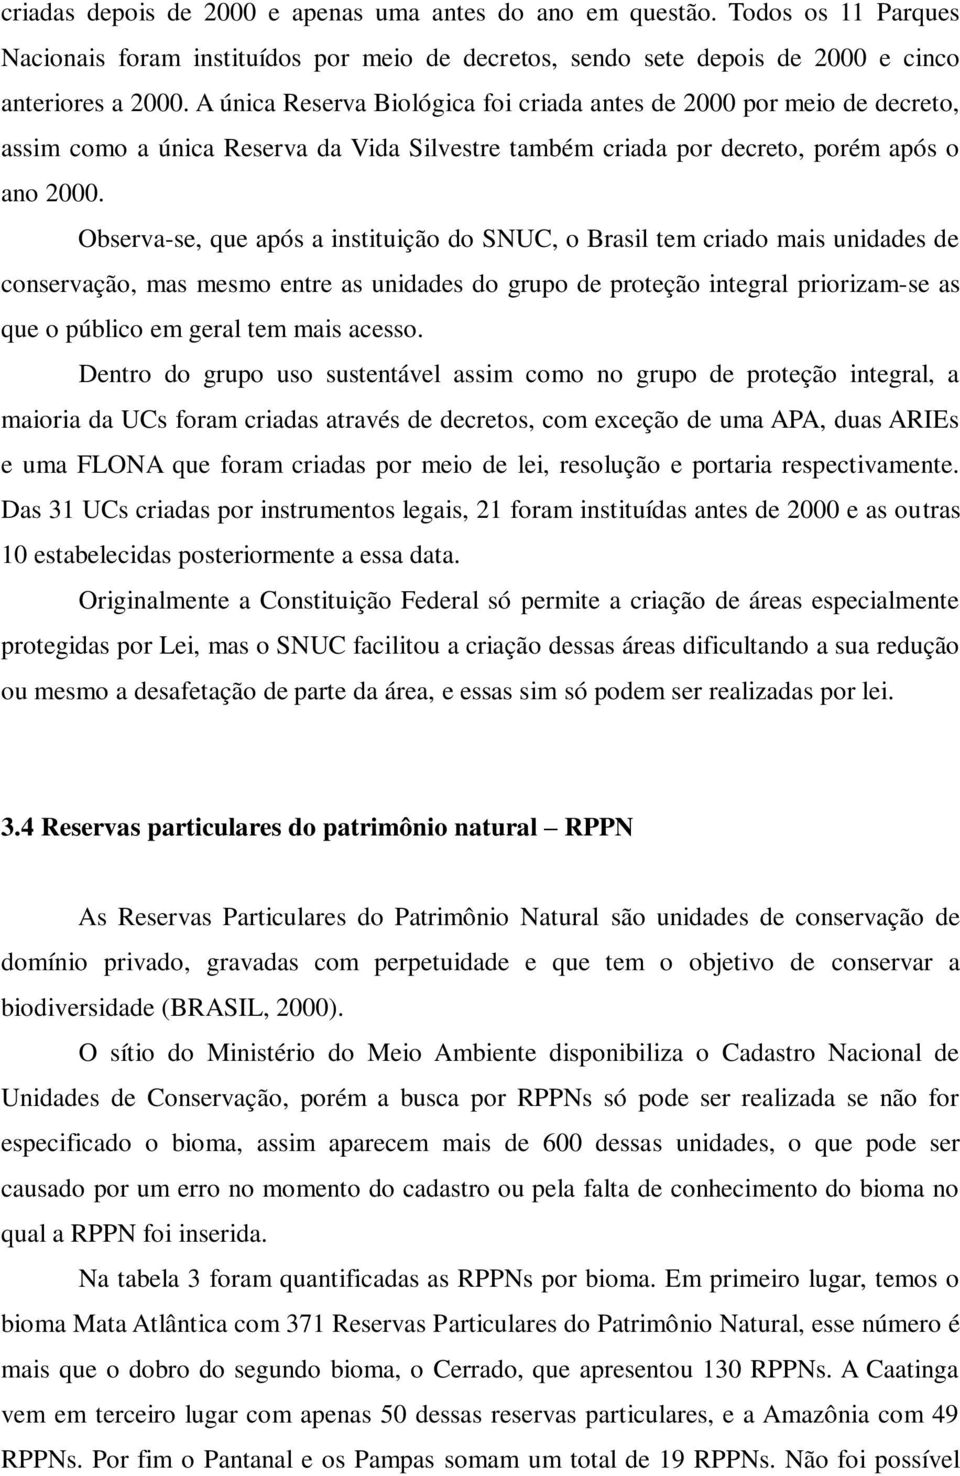 Observa-se, que após a instituição do SNUC, o Brasil tem criado mais unidades de conservação, mas mesmo entre as unidades do grupo de proteção integral priorizam-se as que o público em geral tem mais